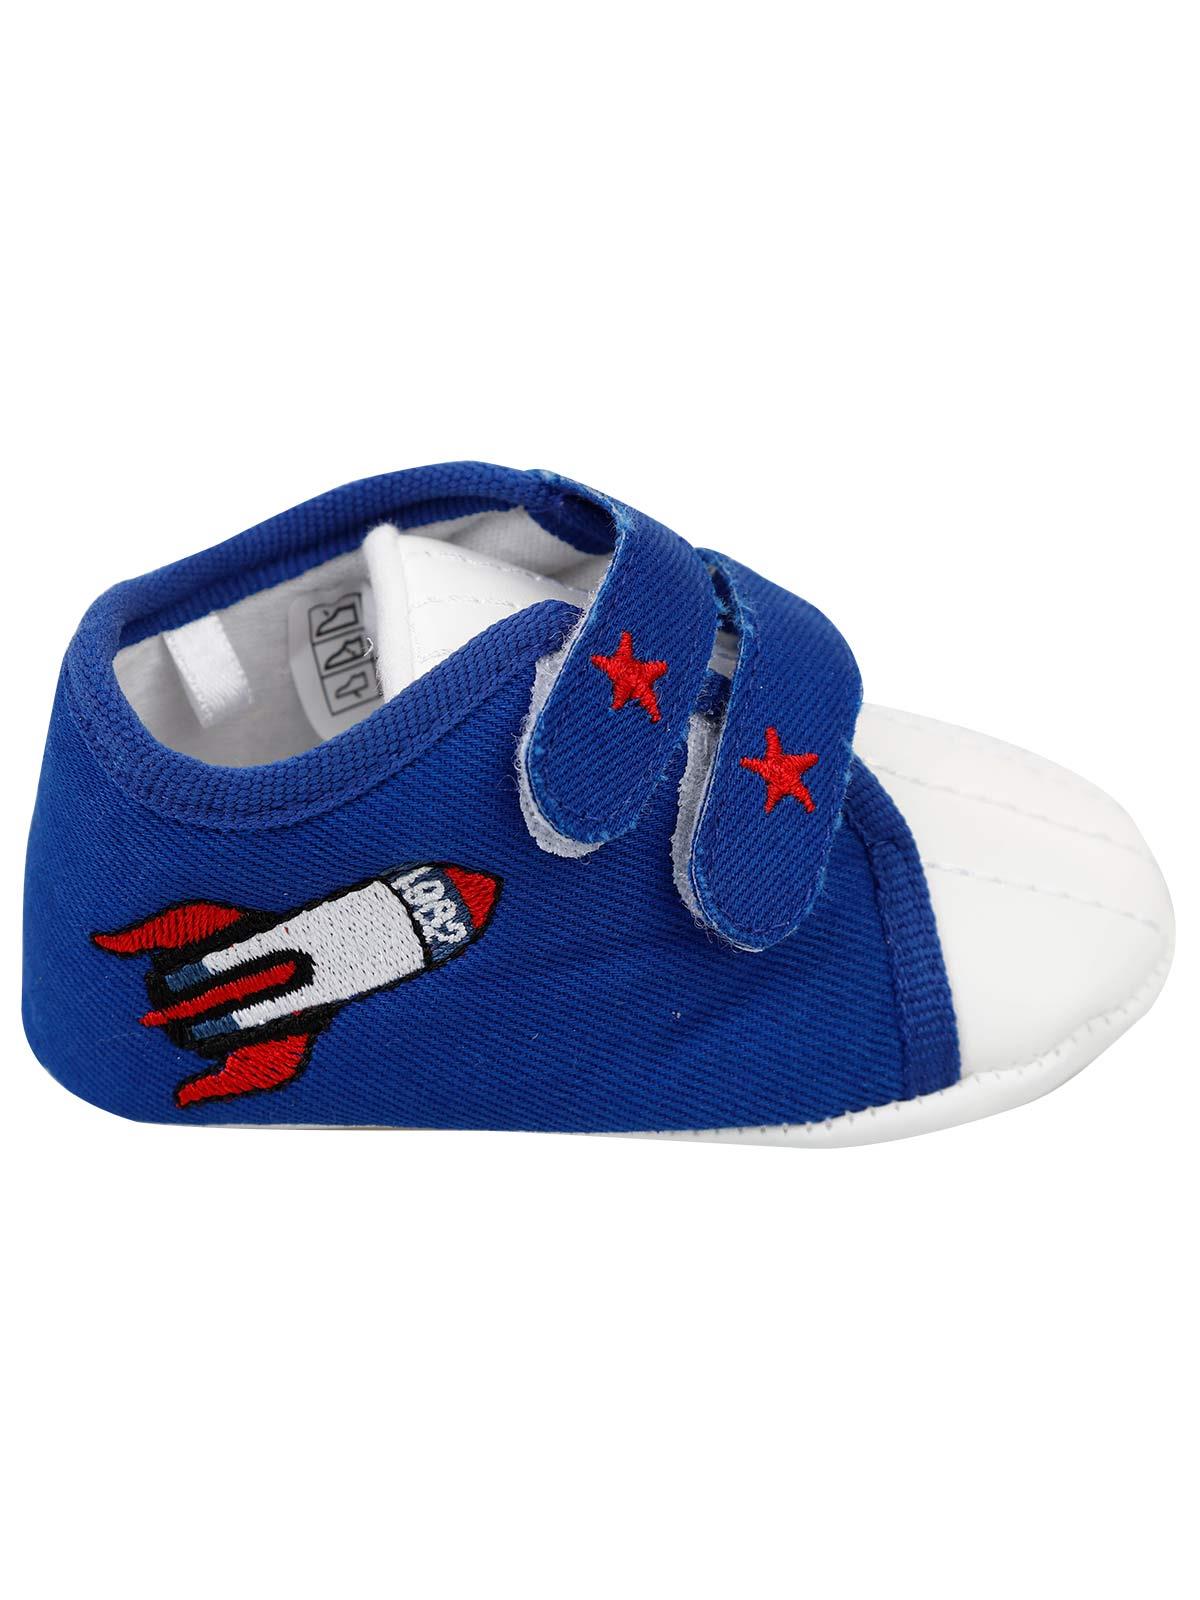 First Step Erkek Bebek Patik Ayakkabı 17-19 Numara Saks Mavisi